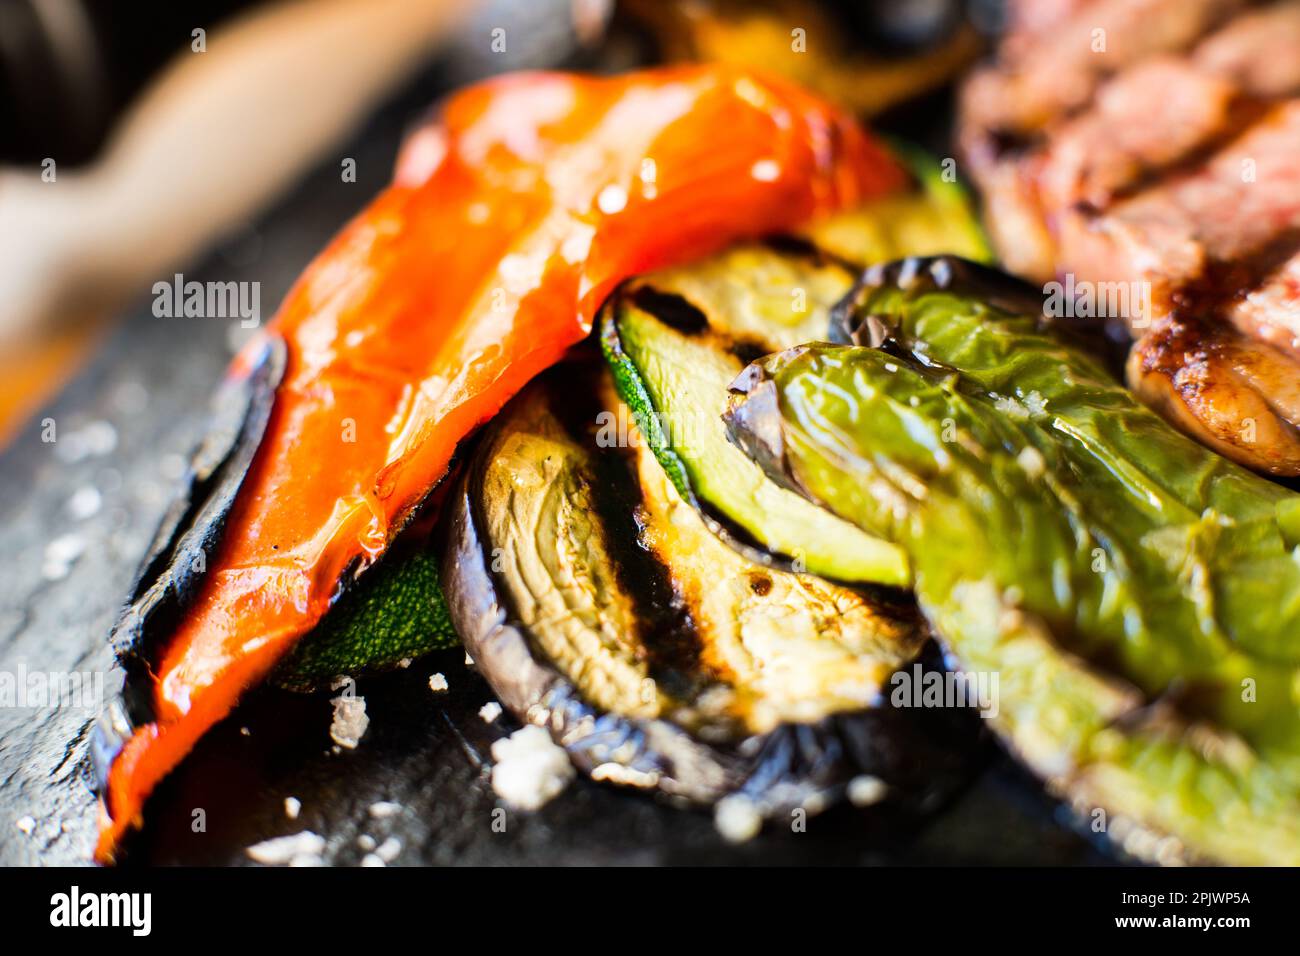 Verdure arrosto al forno come peperoni, melanzane, cipolle accompagnate da salsa di romesco catalana. Foto Stock